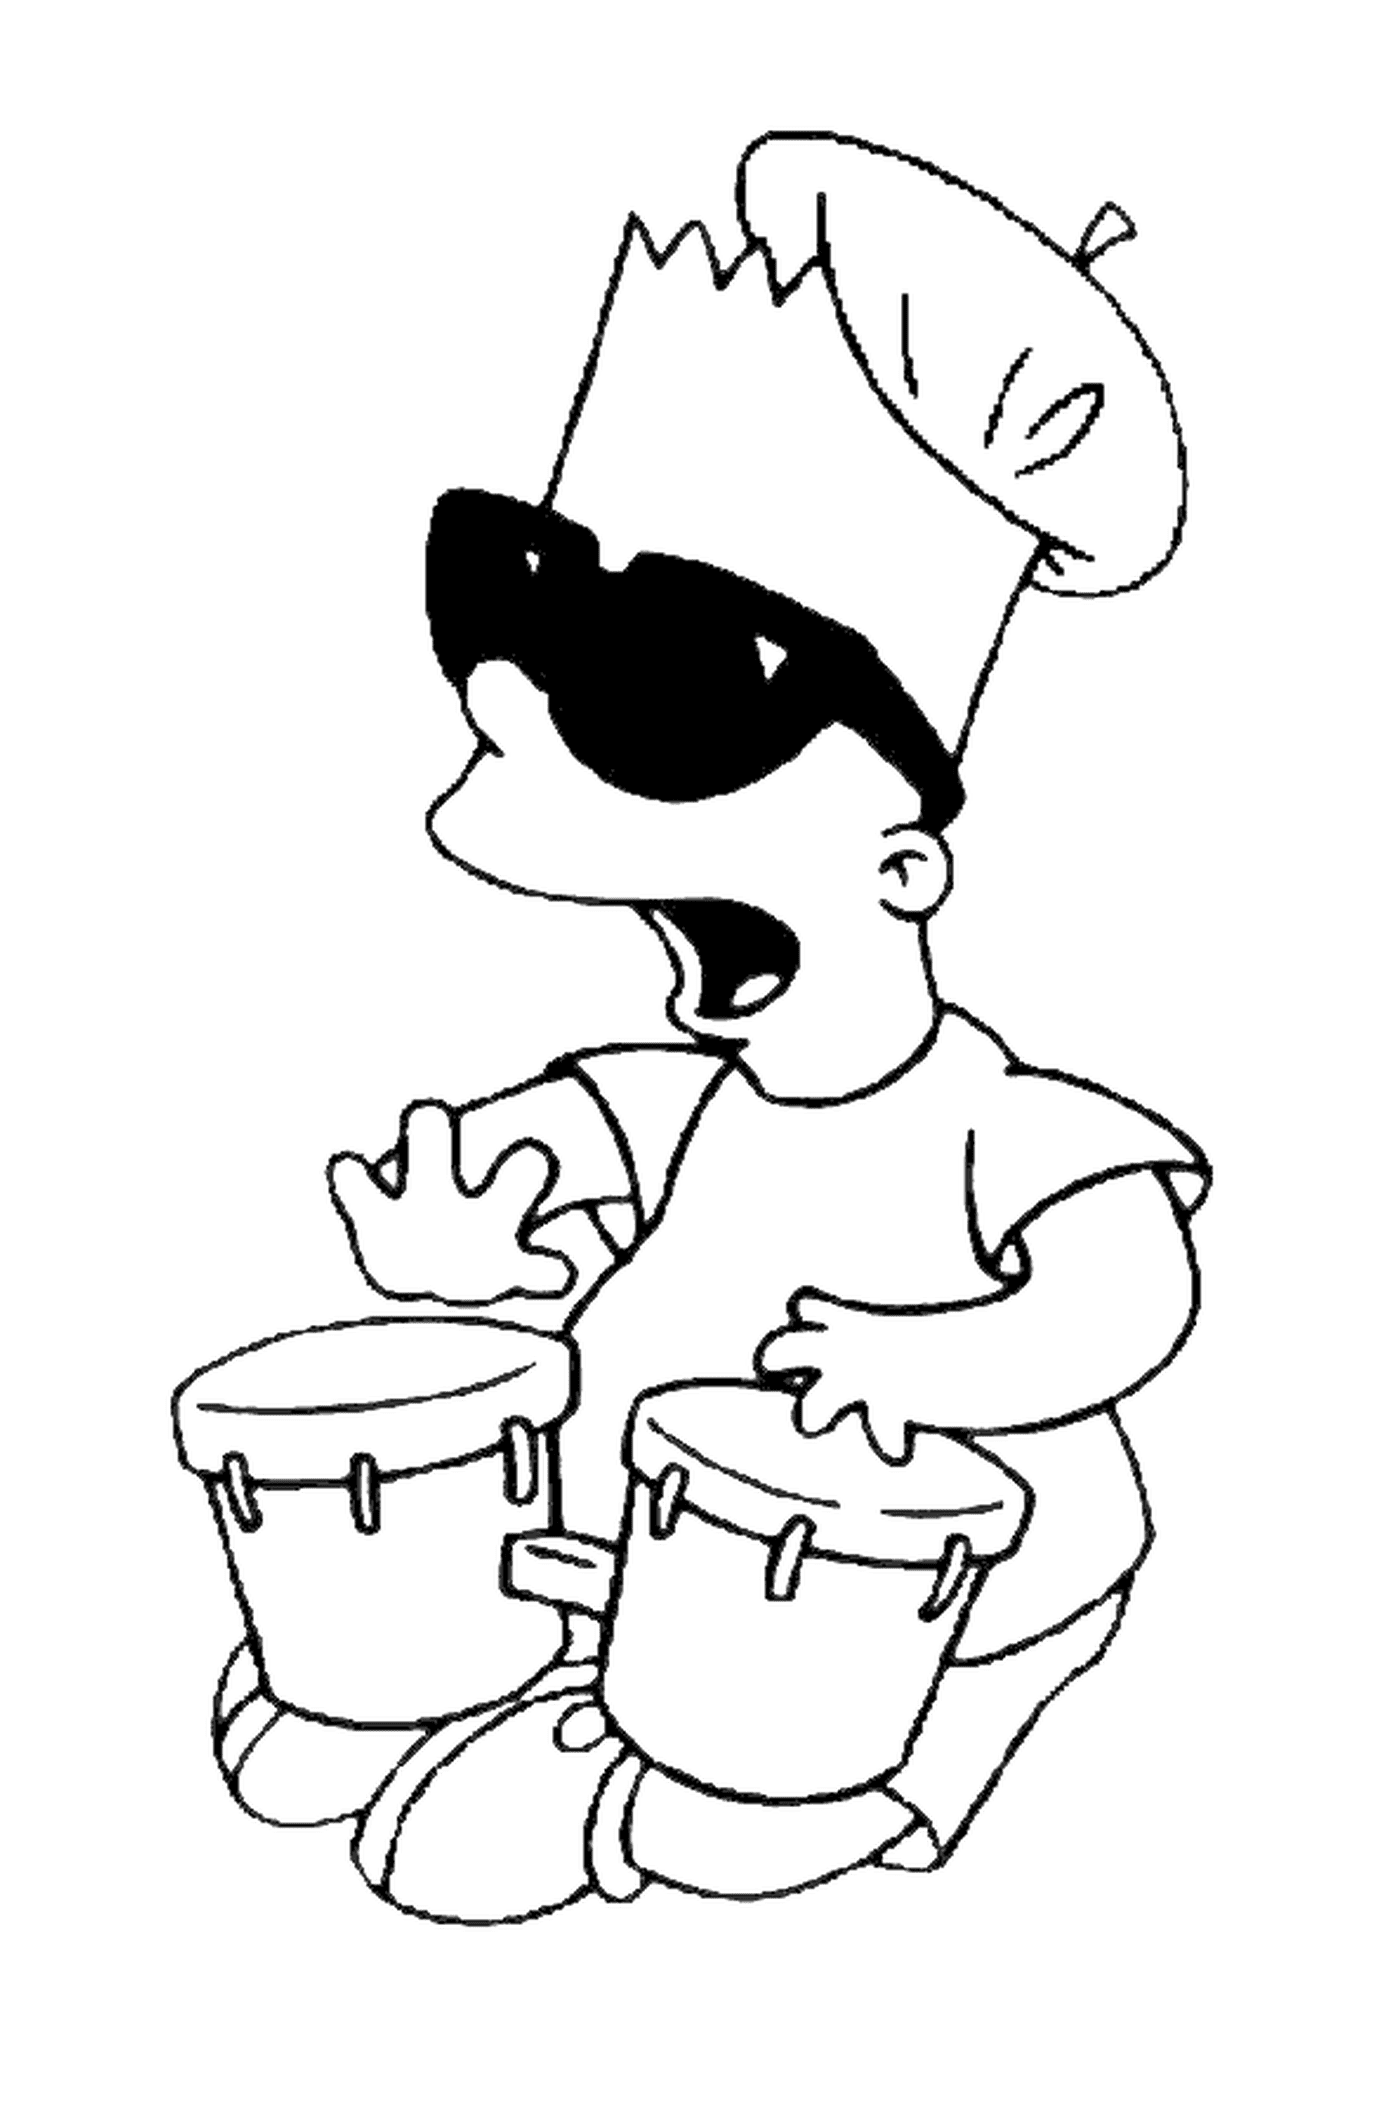   Bart fait de la musique avec des tam-tam, personne jouant d'un instrument 